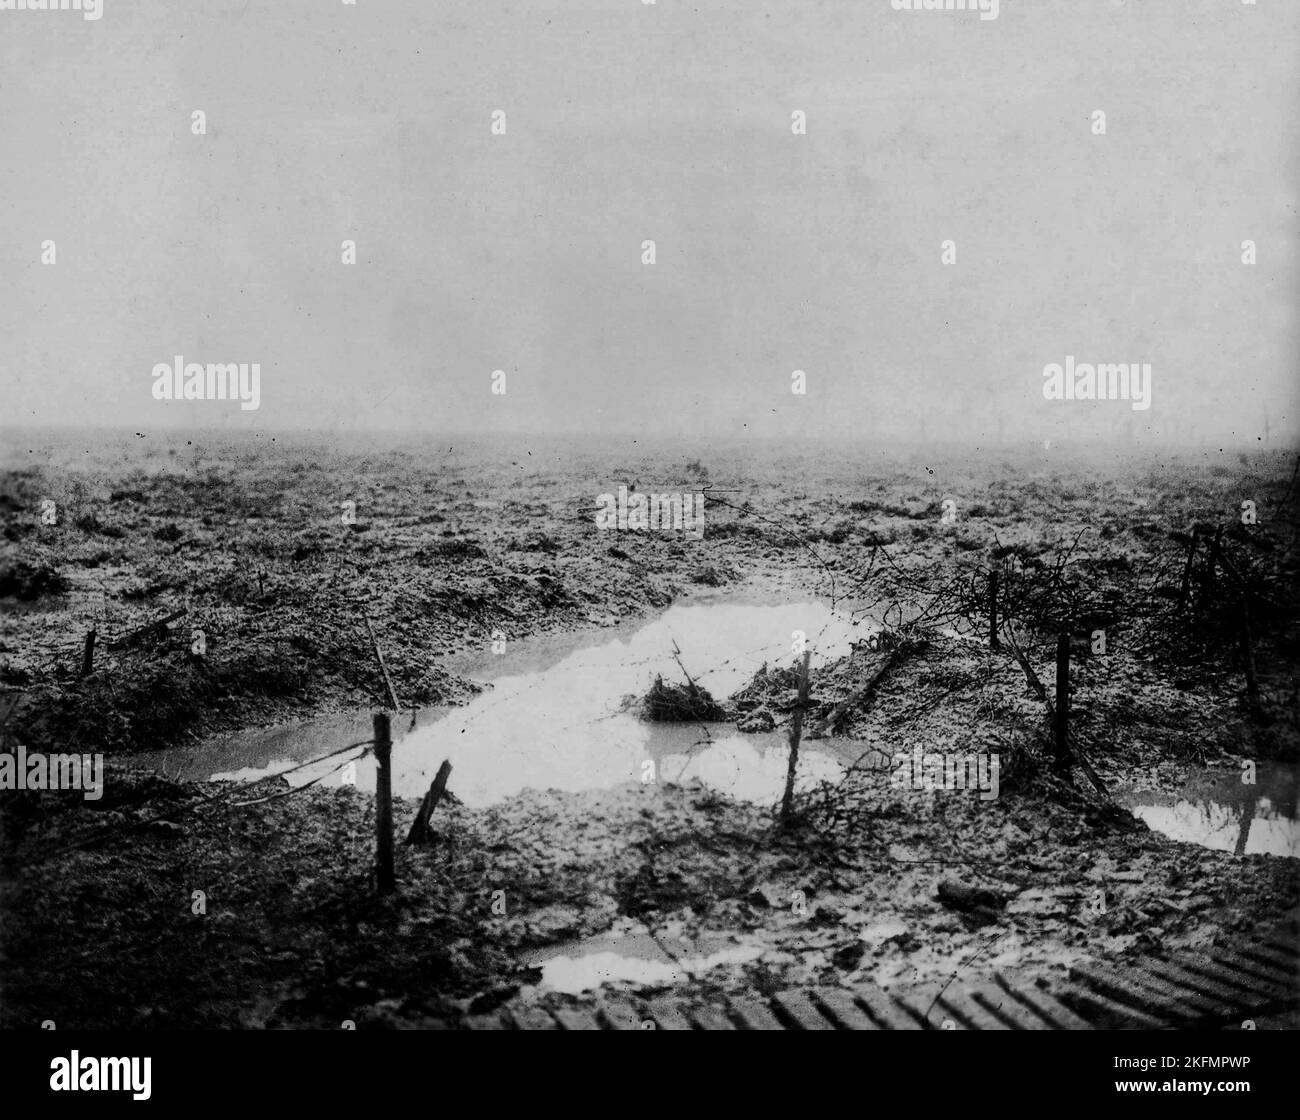 PASCHENDALE, BÉLGICA - 1917 - La tierra de nadie...El barro, el agua y el alambre de púas ilustran el horrible terreno a través del cual los canadienses avanzaron en el Foto de stock